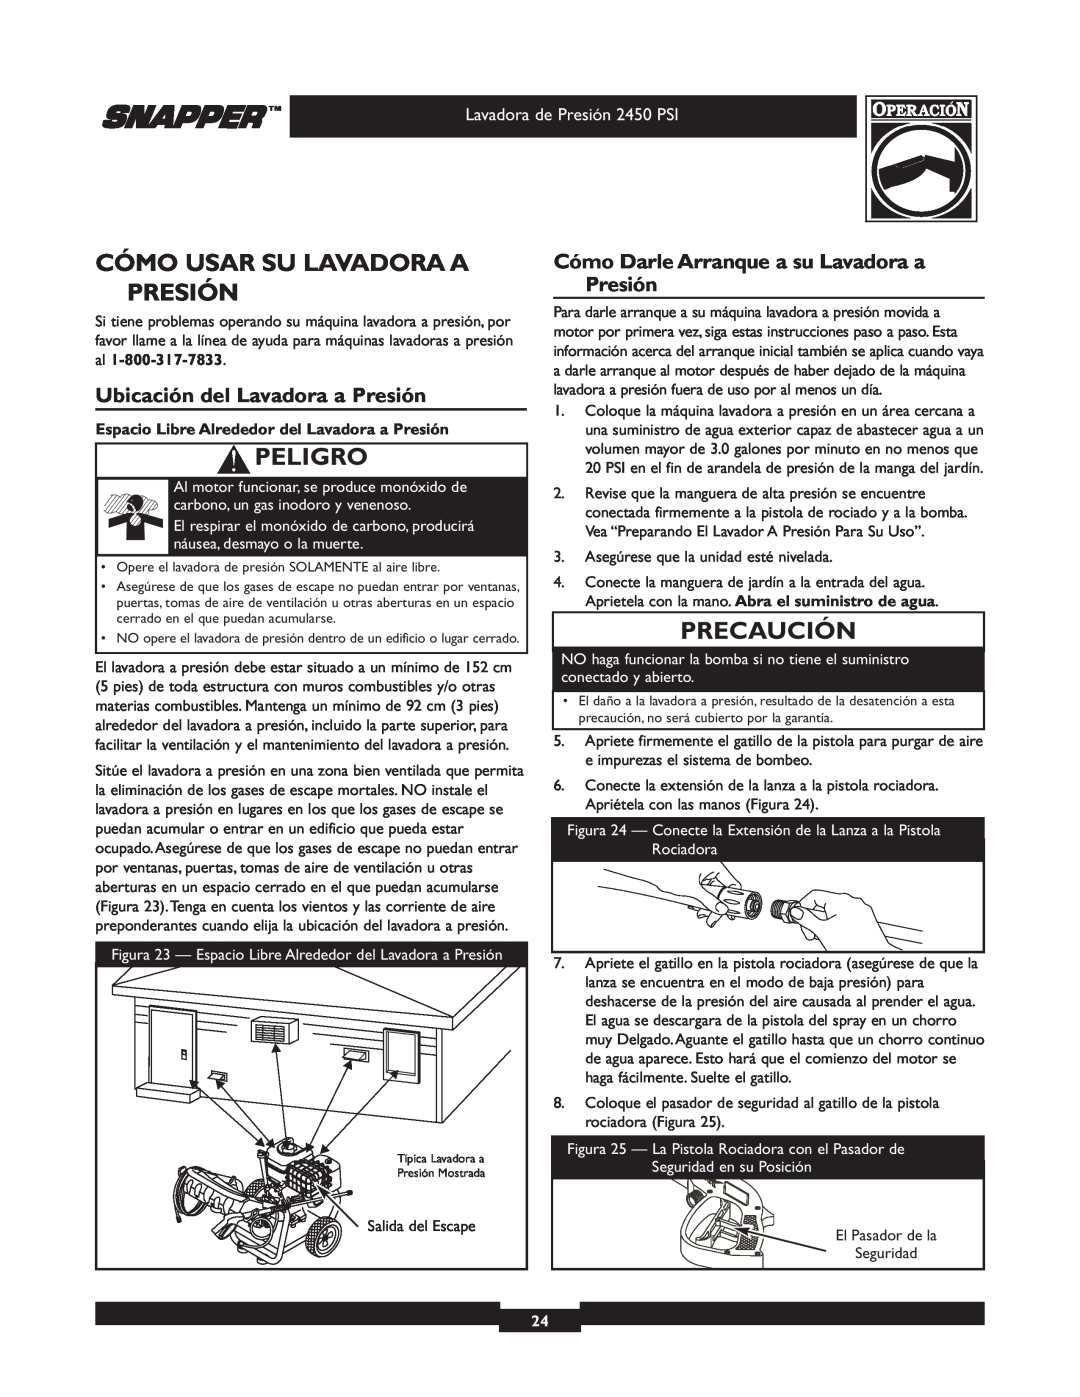 Snapper 020229 owner manual Cómo Usar Su Lavadora A Presión, Ubicación del Lavadora a Presión, Peligro, Precaución 